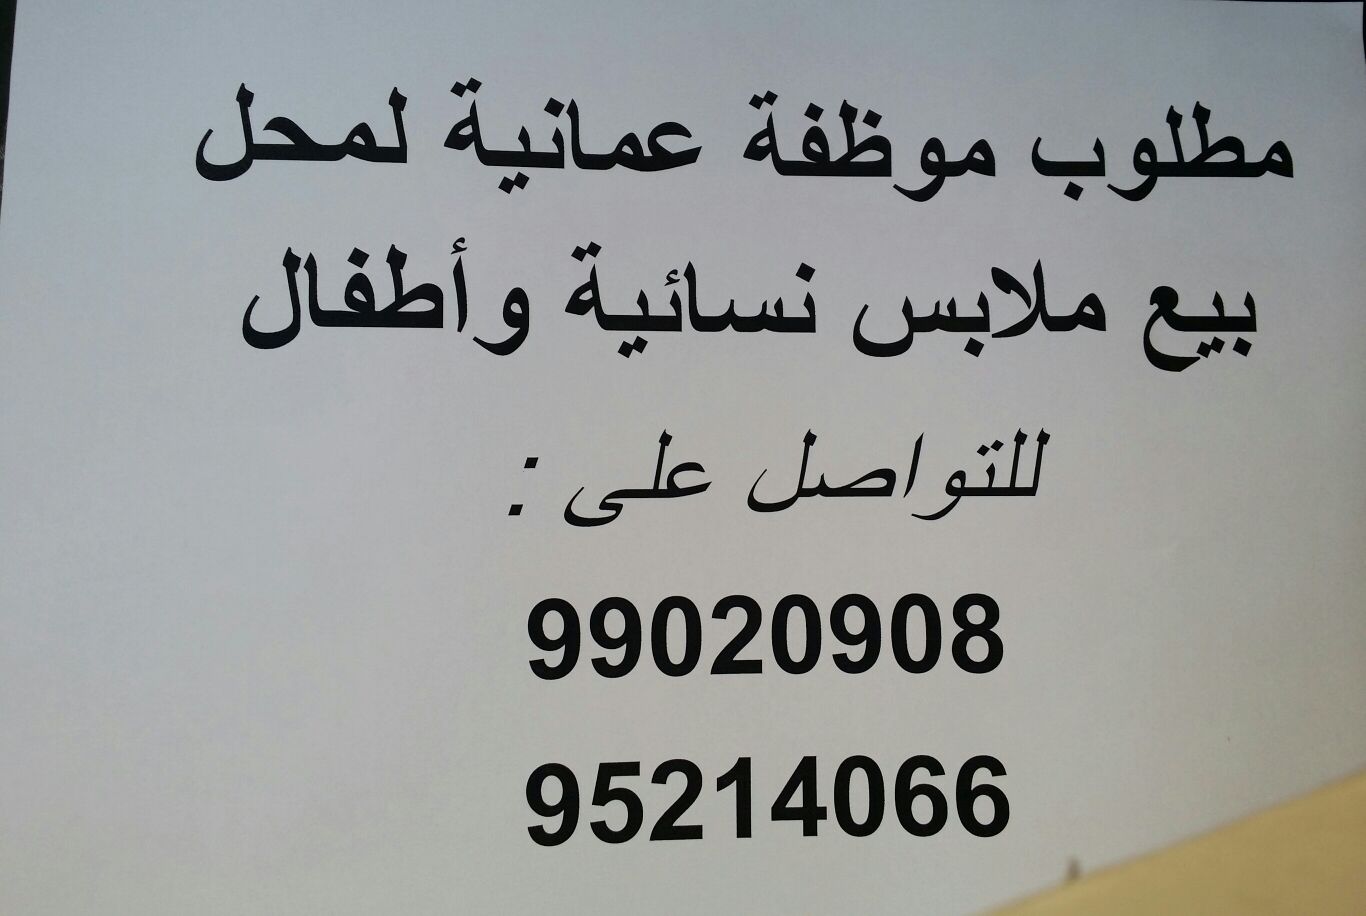 شبكة عمان on X: "مطلوب موظفة للعمل في محل ملابس نسائية في مسقط . #وظائف  #عمان #شبكة_عمان https://t.co/xq7d7EcR6U" / X